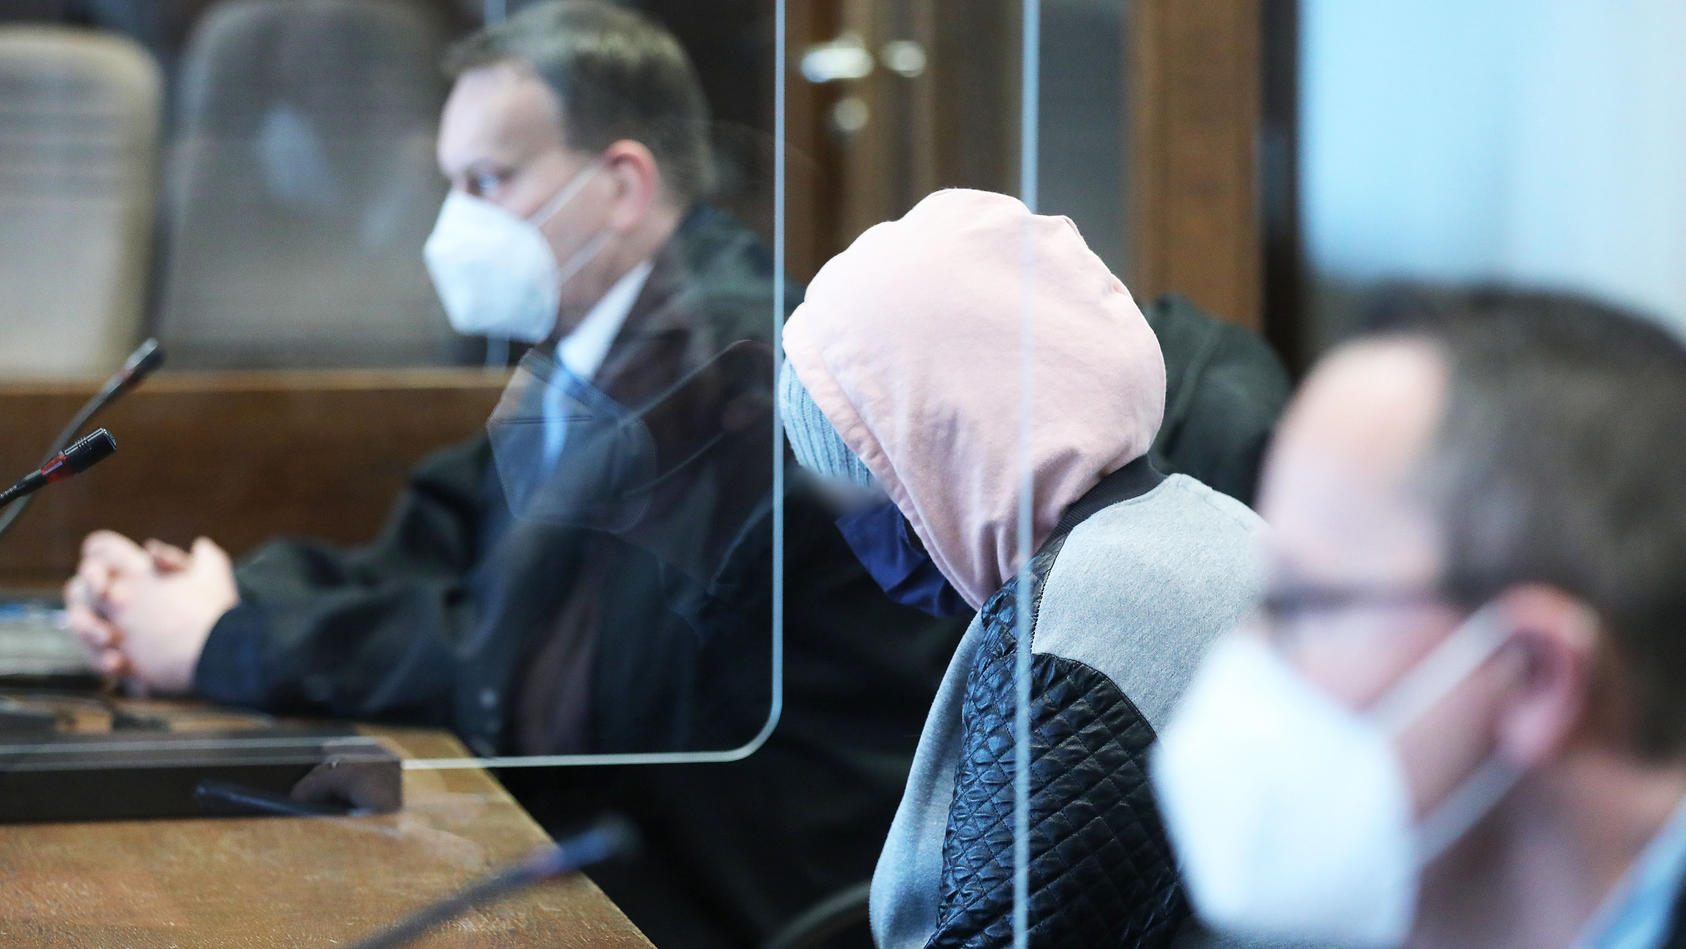 Die Mutter (Mitte) zwischen Anwälten im Gerichtssaal (Archivfoto, 12. April).